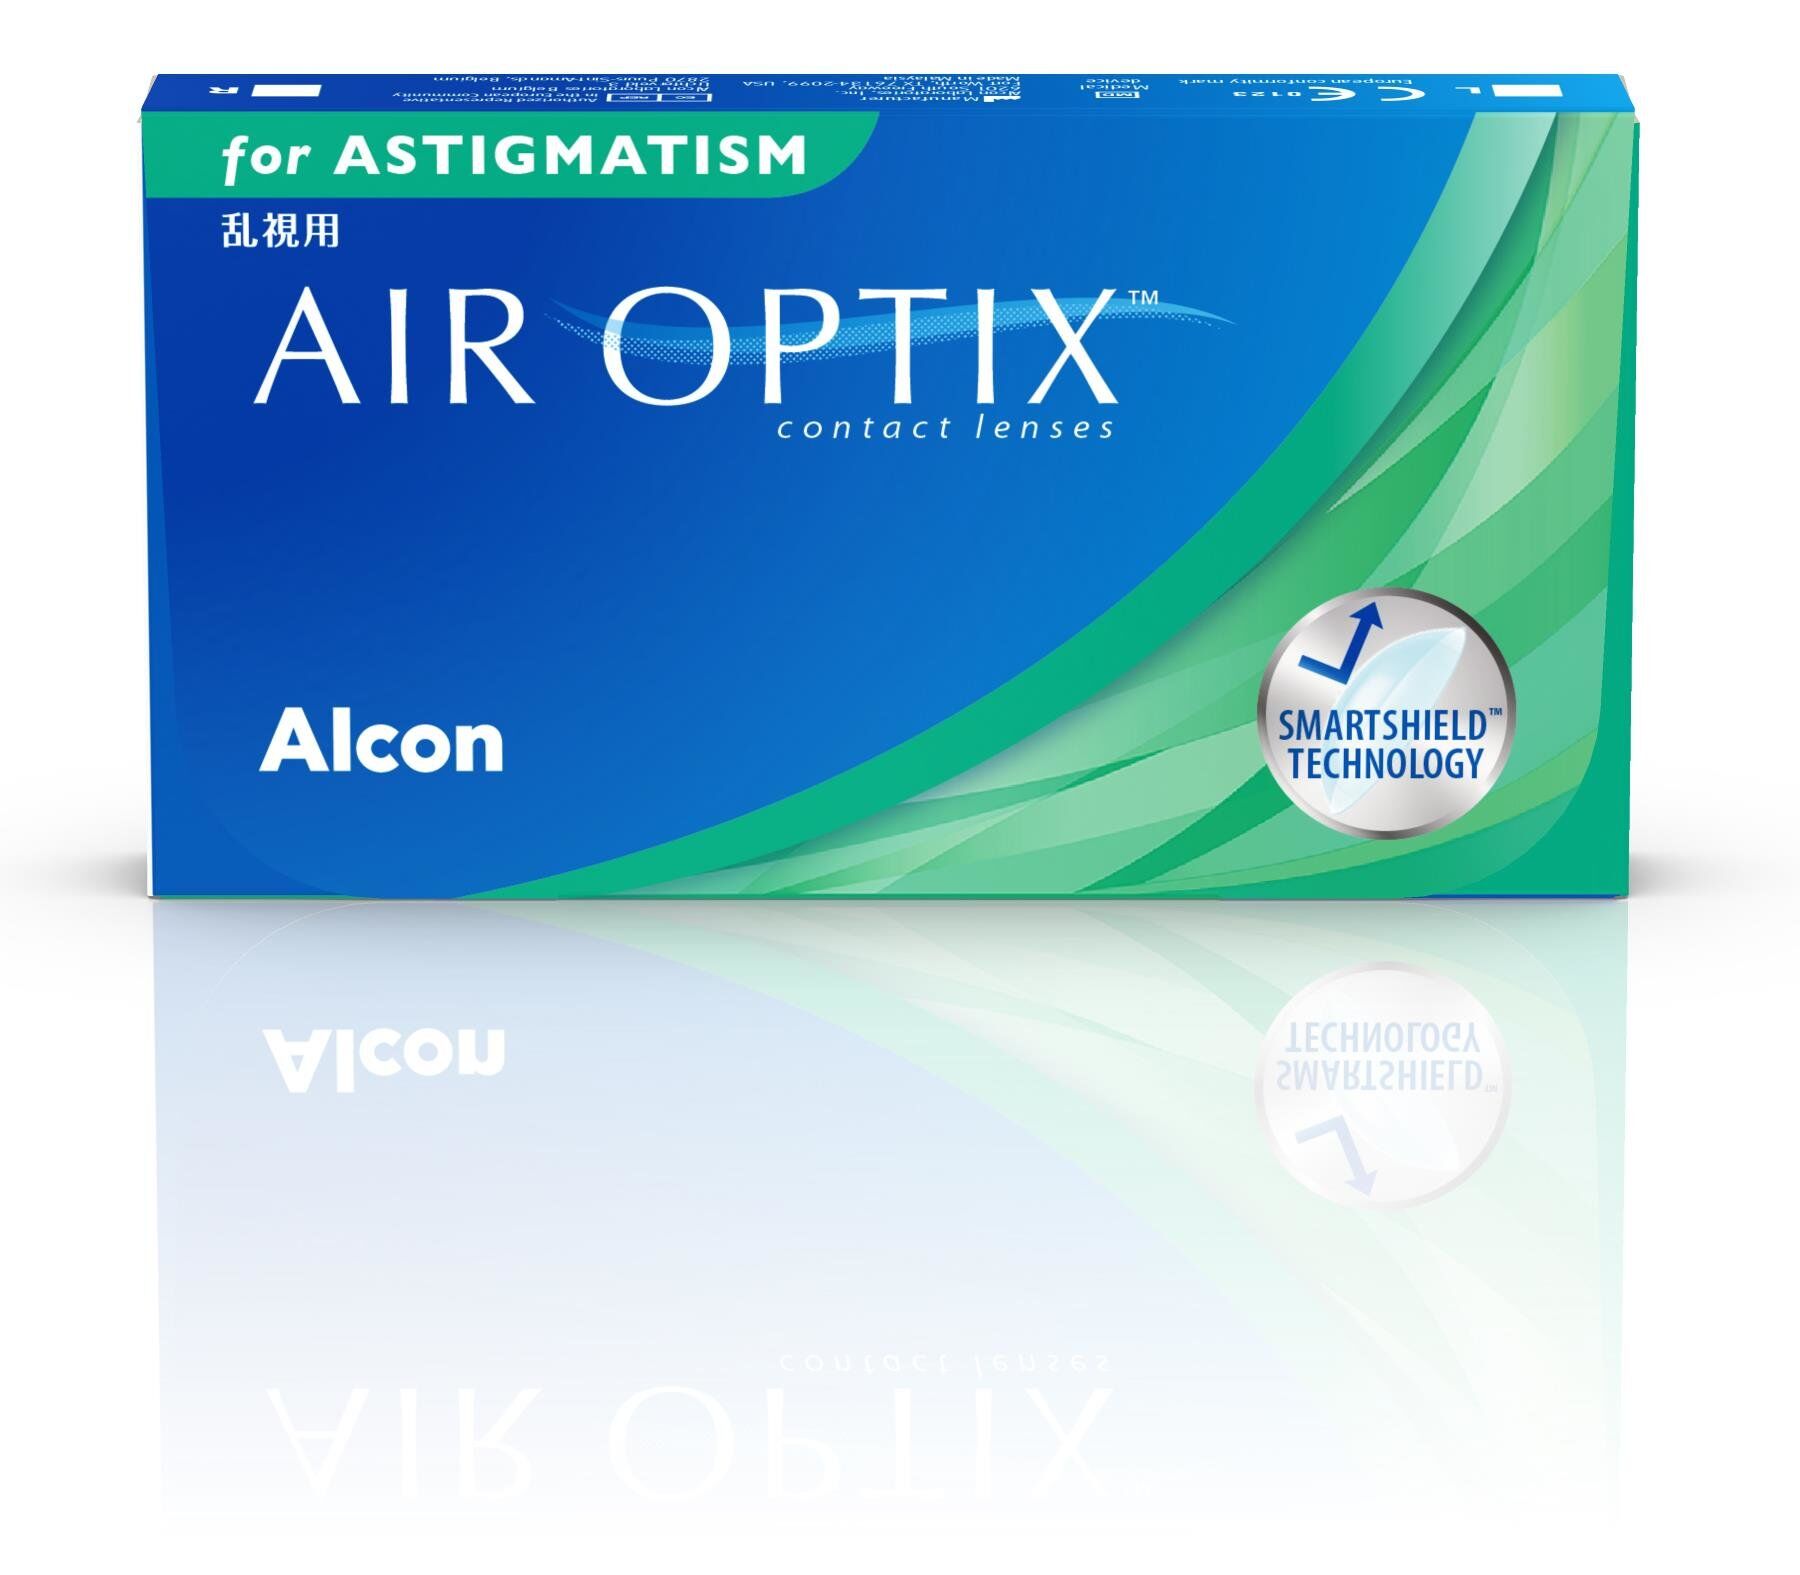 Air Optix Astigmatism